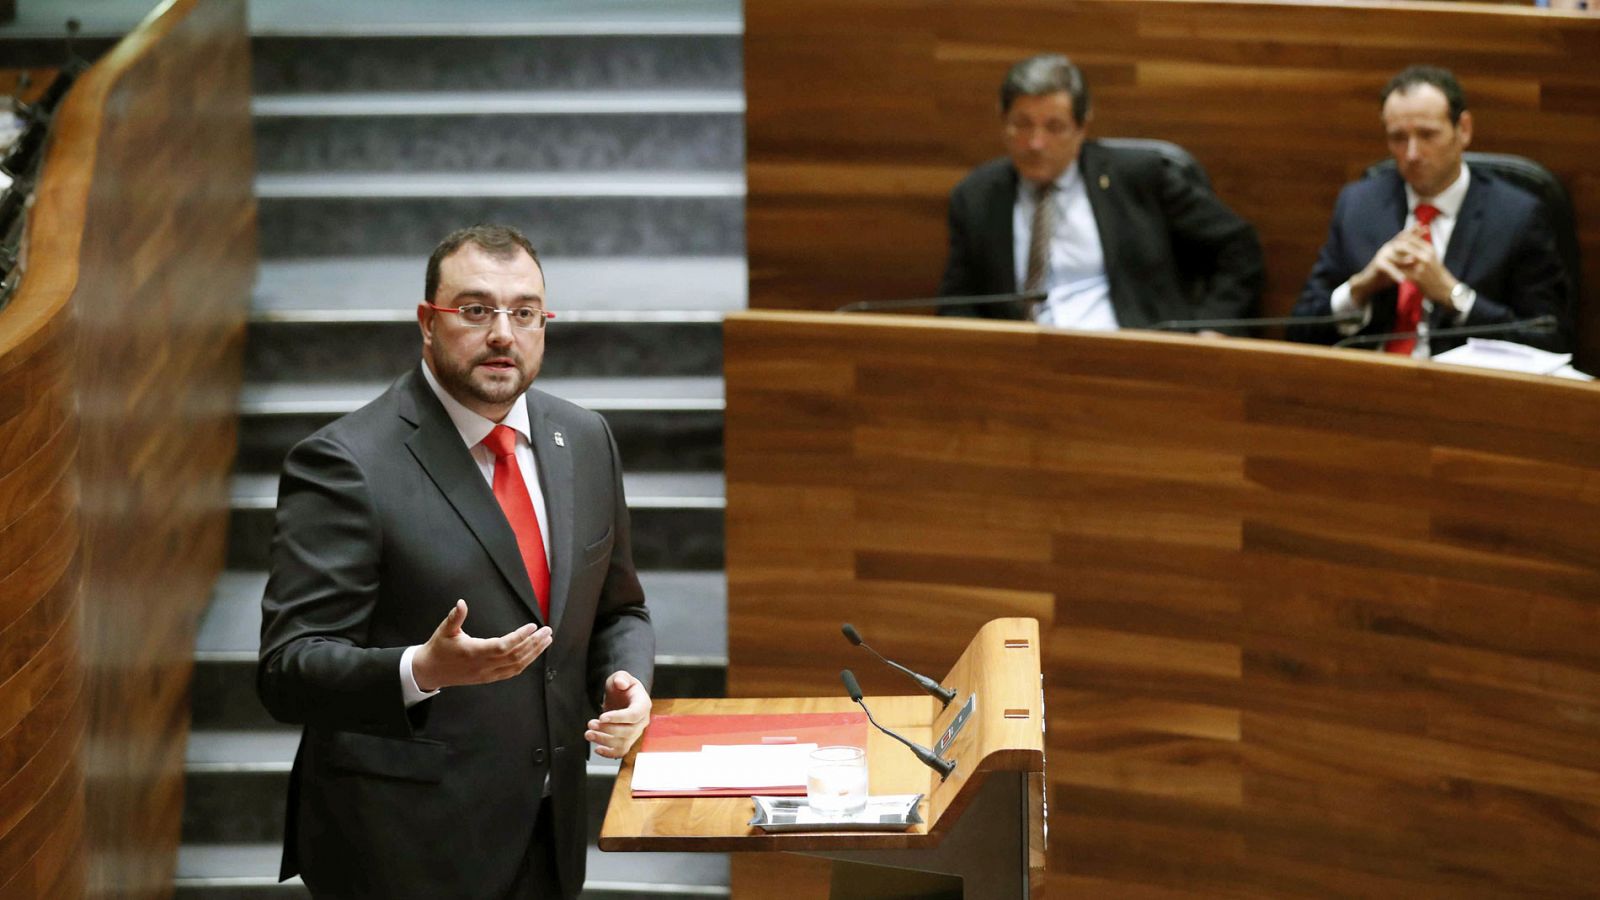 El candidato socialista a la Presidencia del Principado Adrián Barbón durante su intervención en el parlamento asturiano